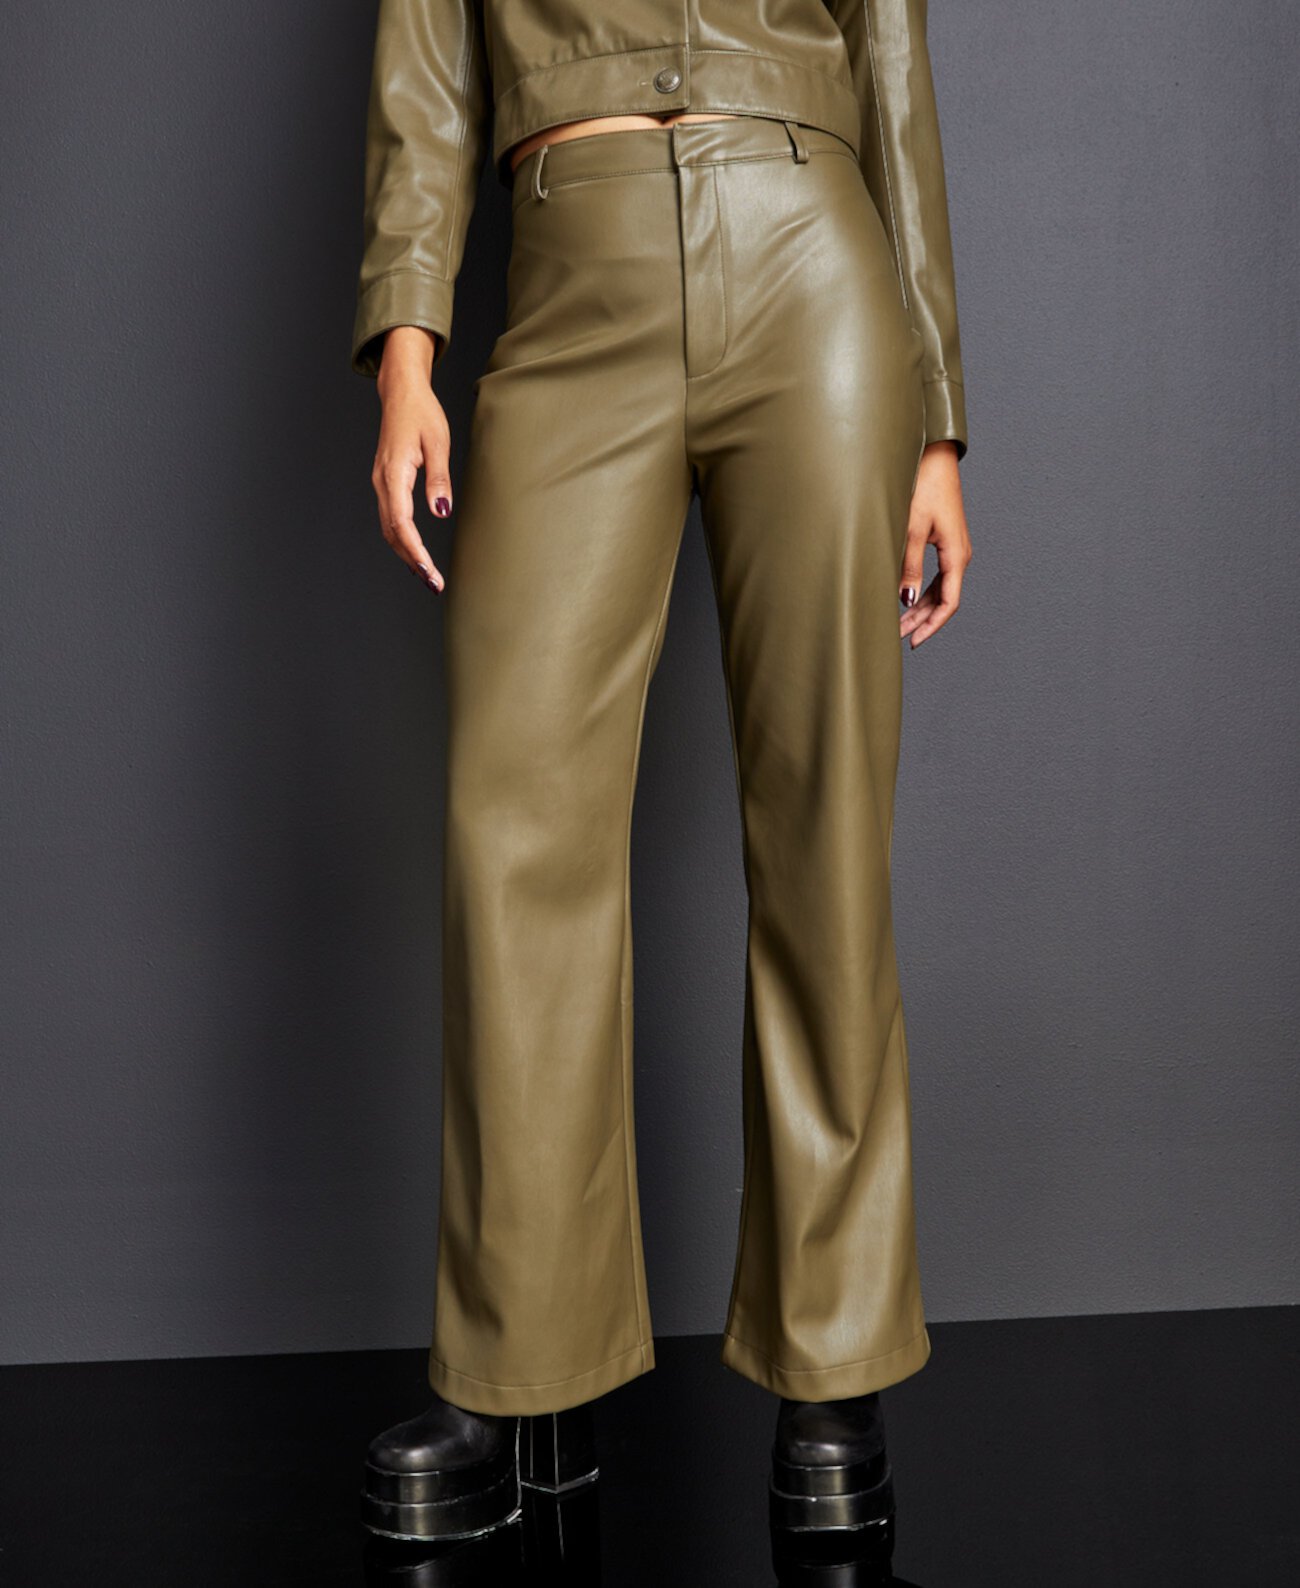 Женские расклешенные брюки из искусственной кожи, созданные для Macy's Royalty by Maluma